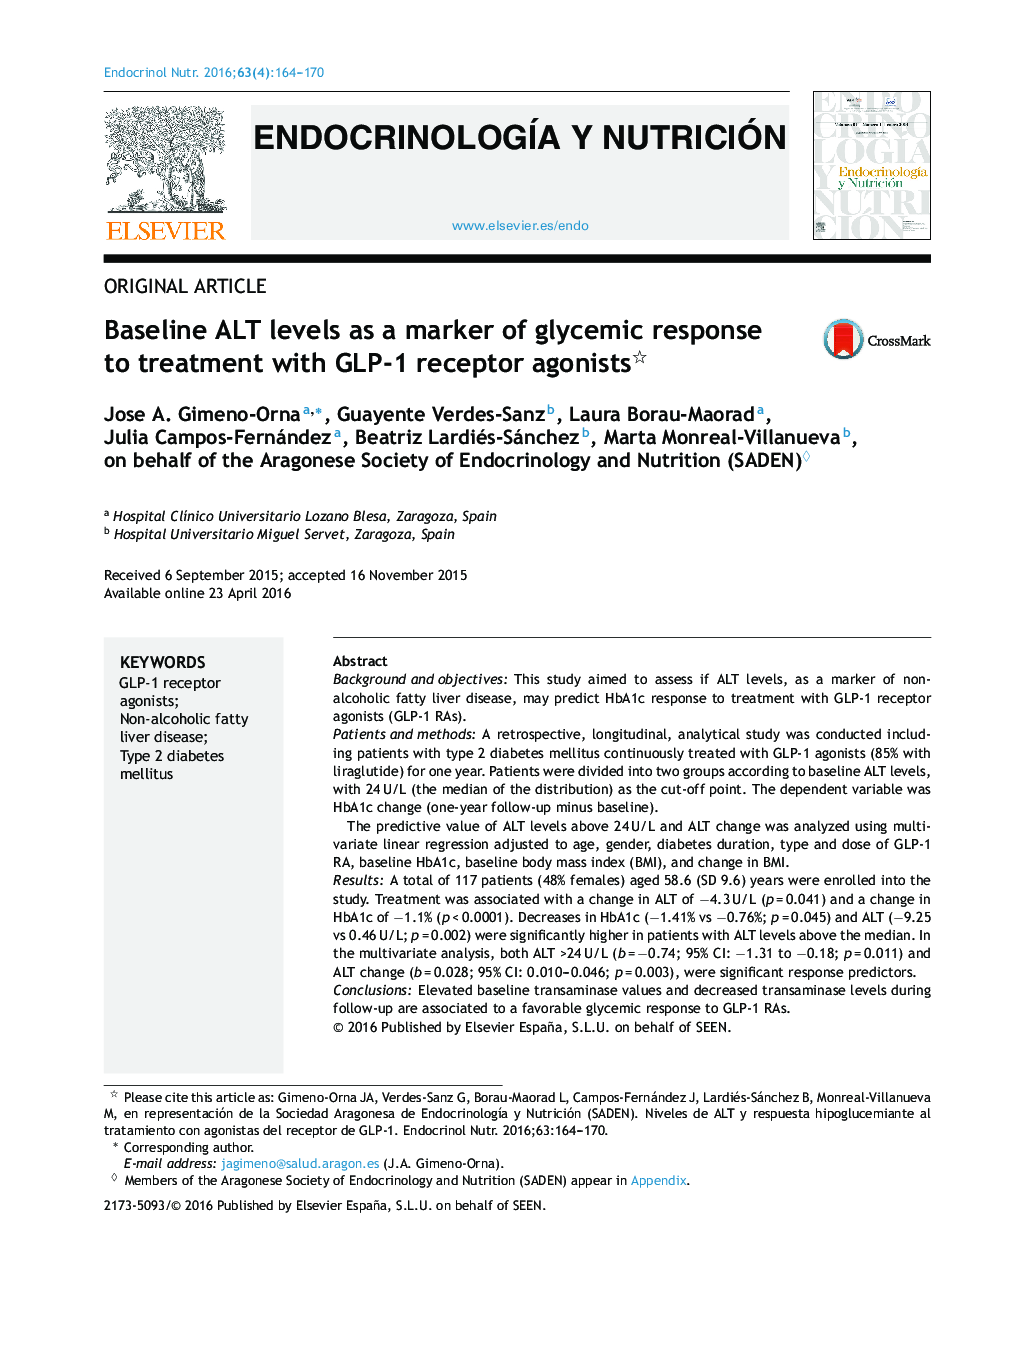 سطوح ALT اولیه به عنوان نشانگر پاسخ گلیسمی به درمان با گیرنده های گیرنده GLP-1